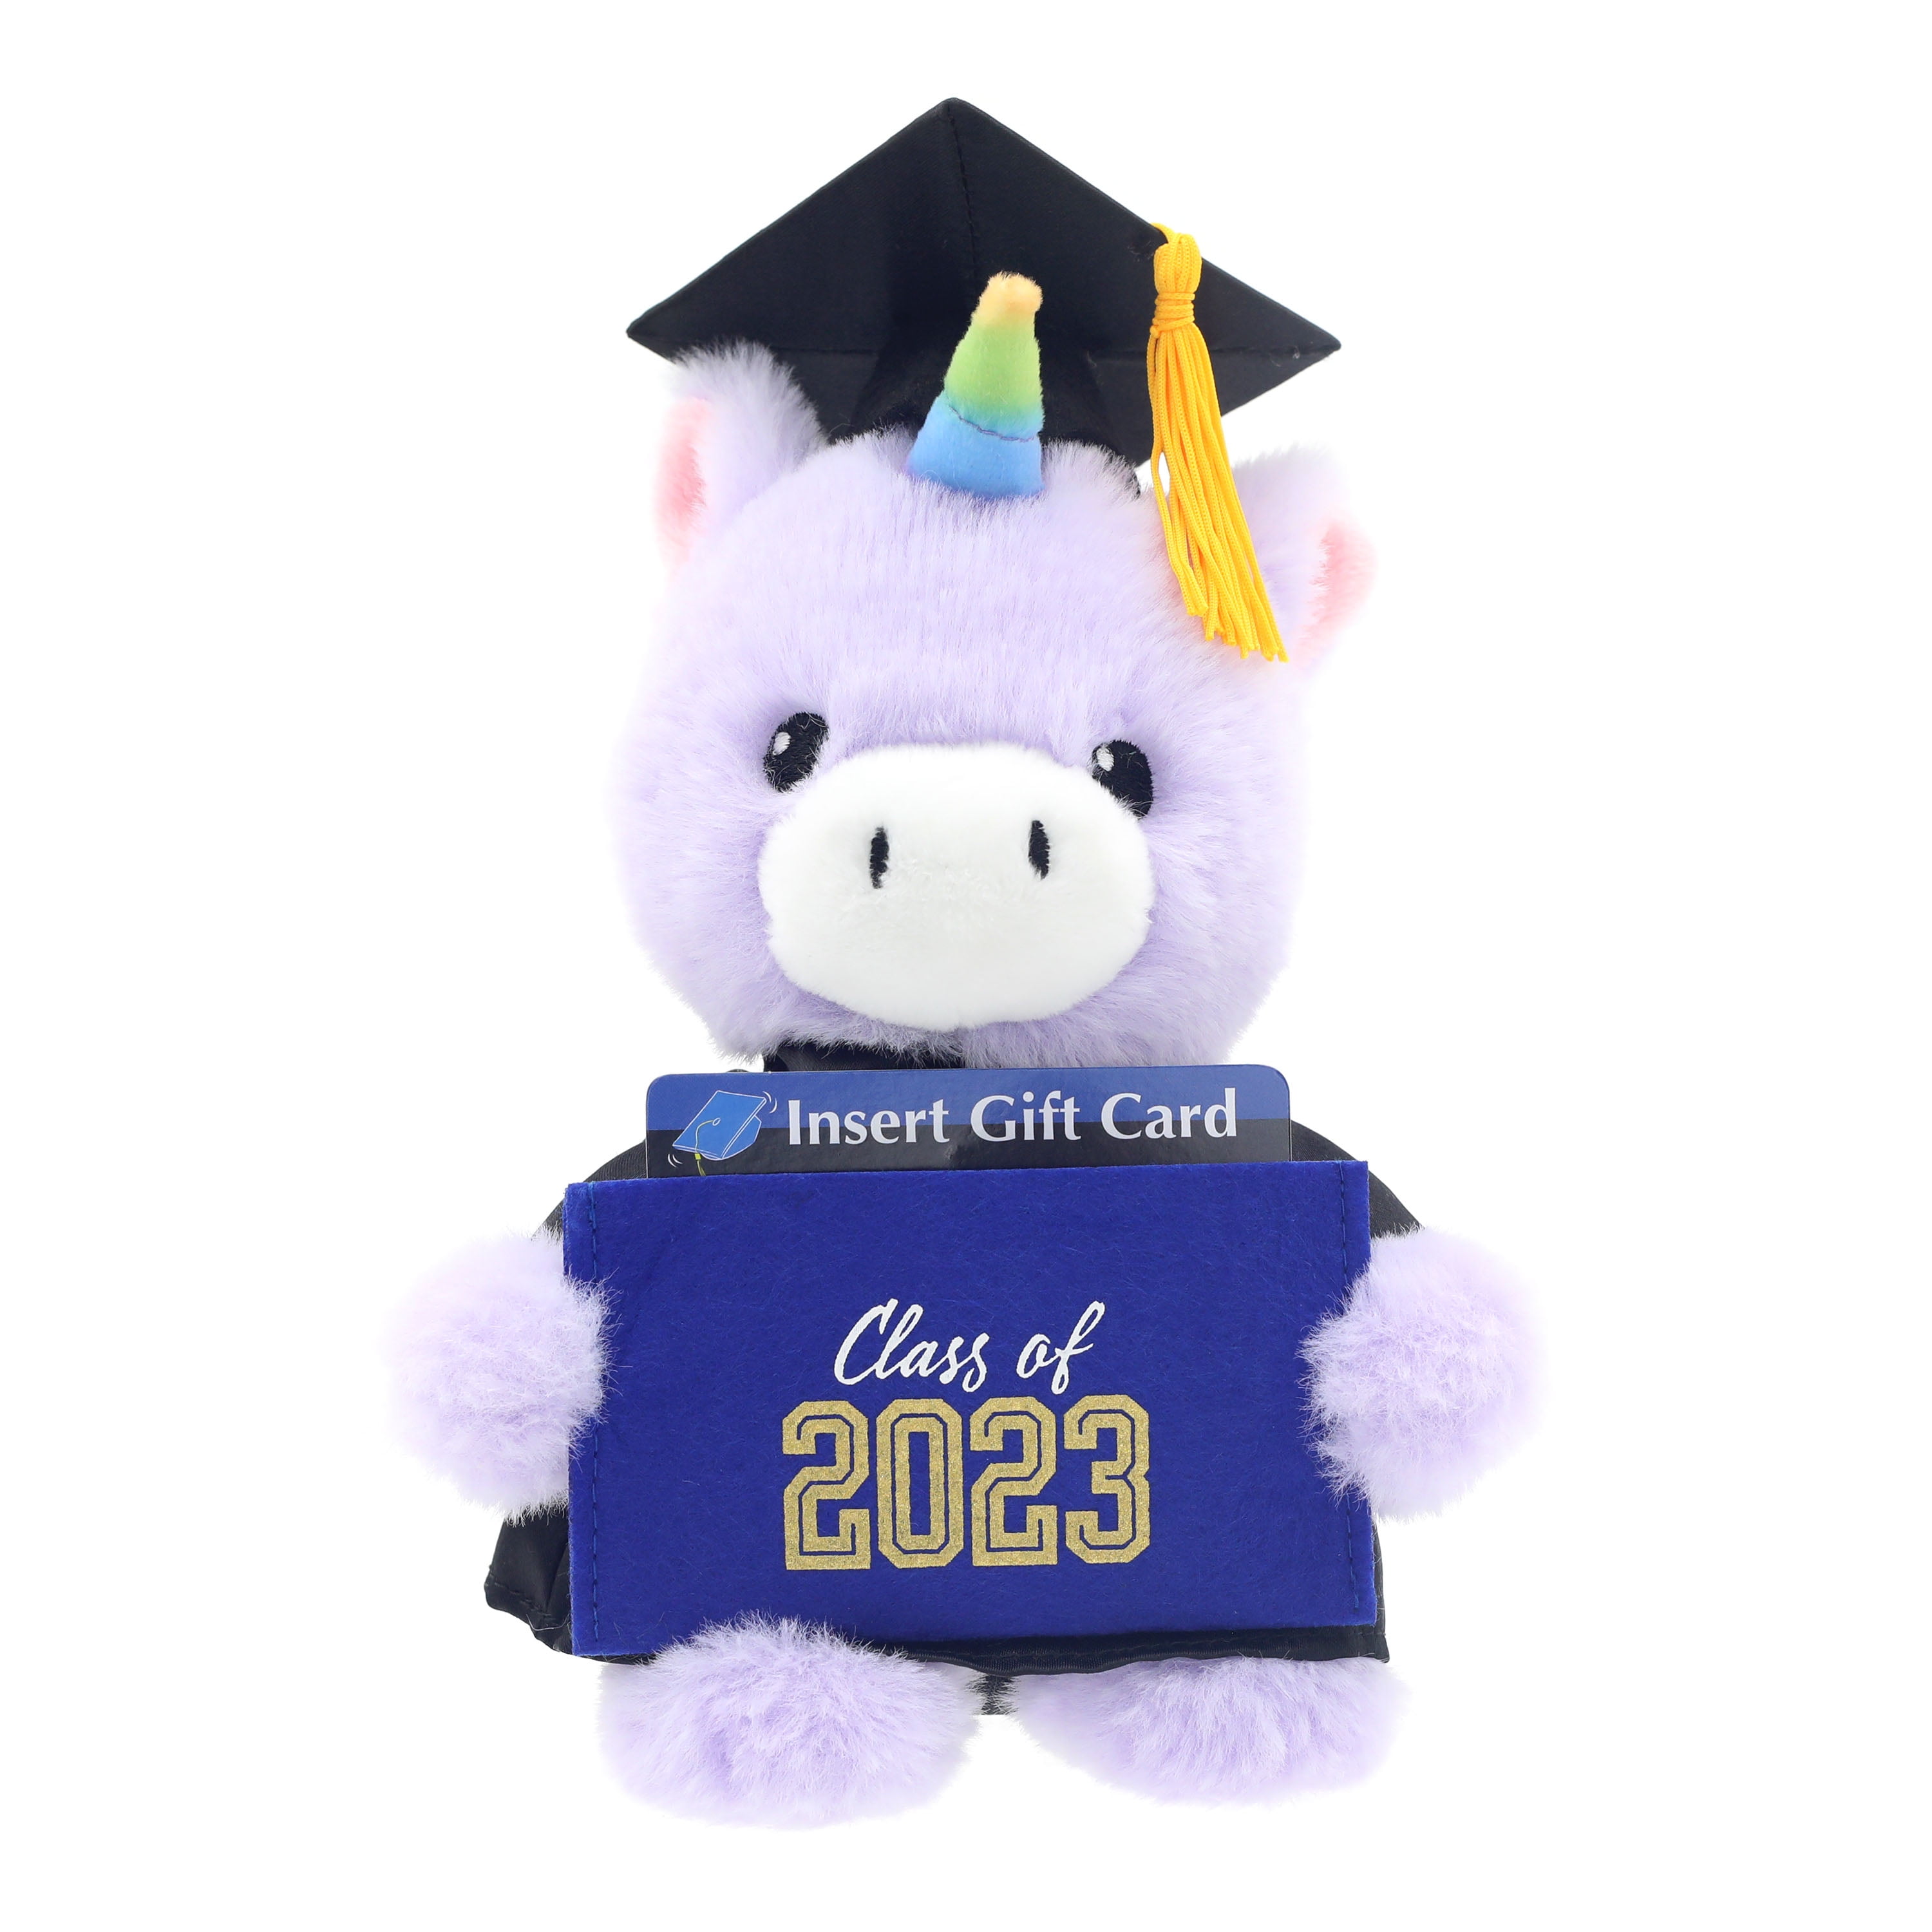 NEW - Way To Celebrate Graduation 9 Singing Unicorn Plush Animal